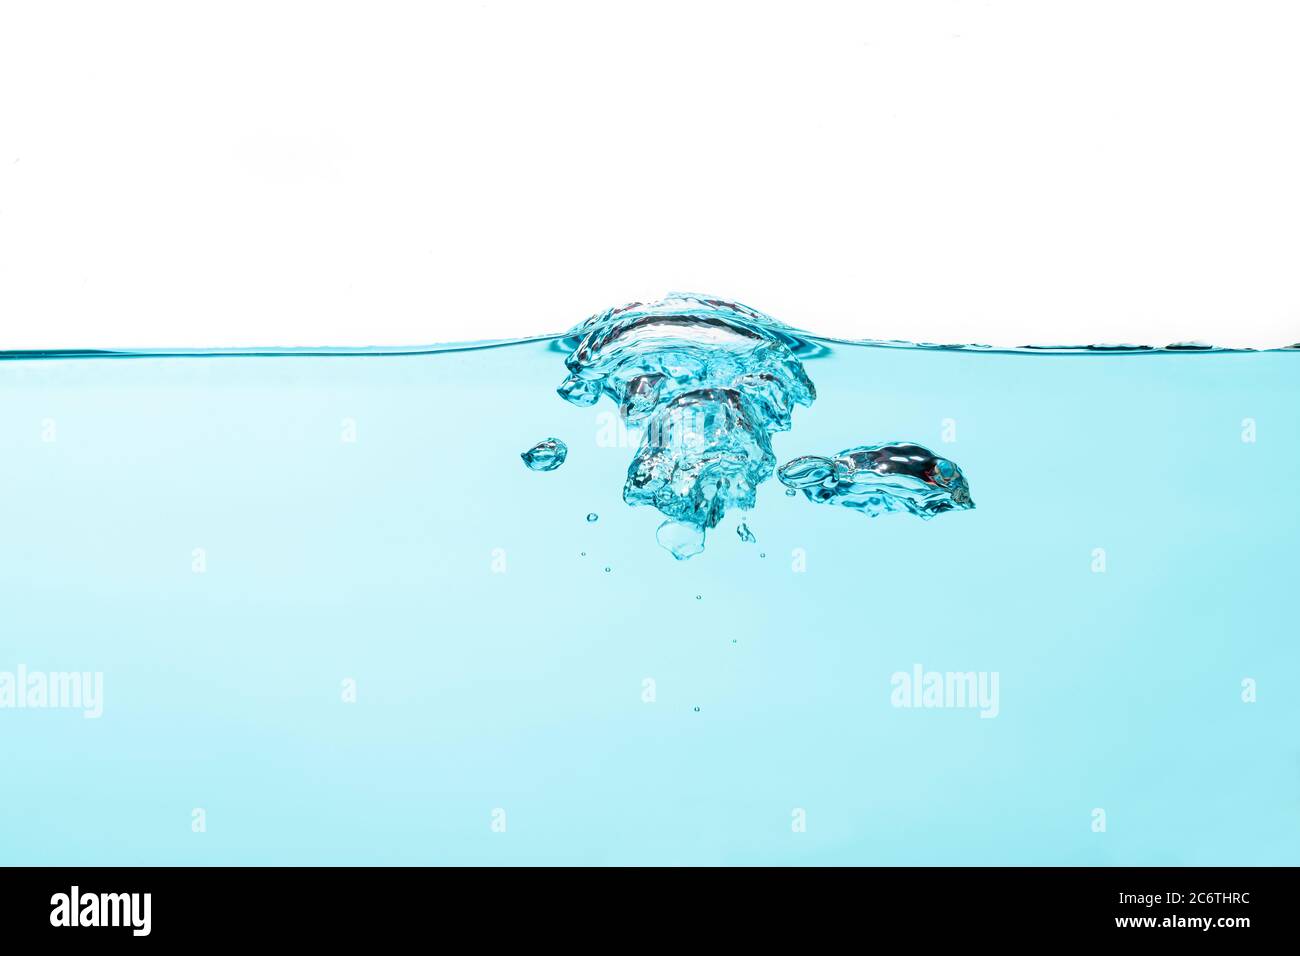 Bolle d'aria e spruzzi d'acqua, acqua spruzzata isolata su sfondo bianco e blu. Foto Stock